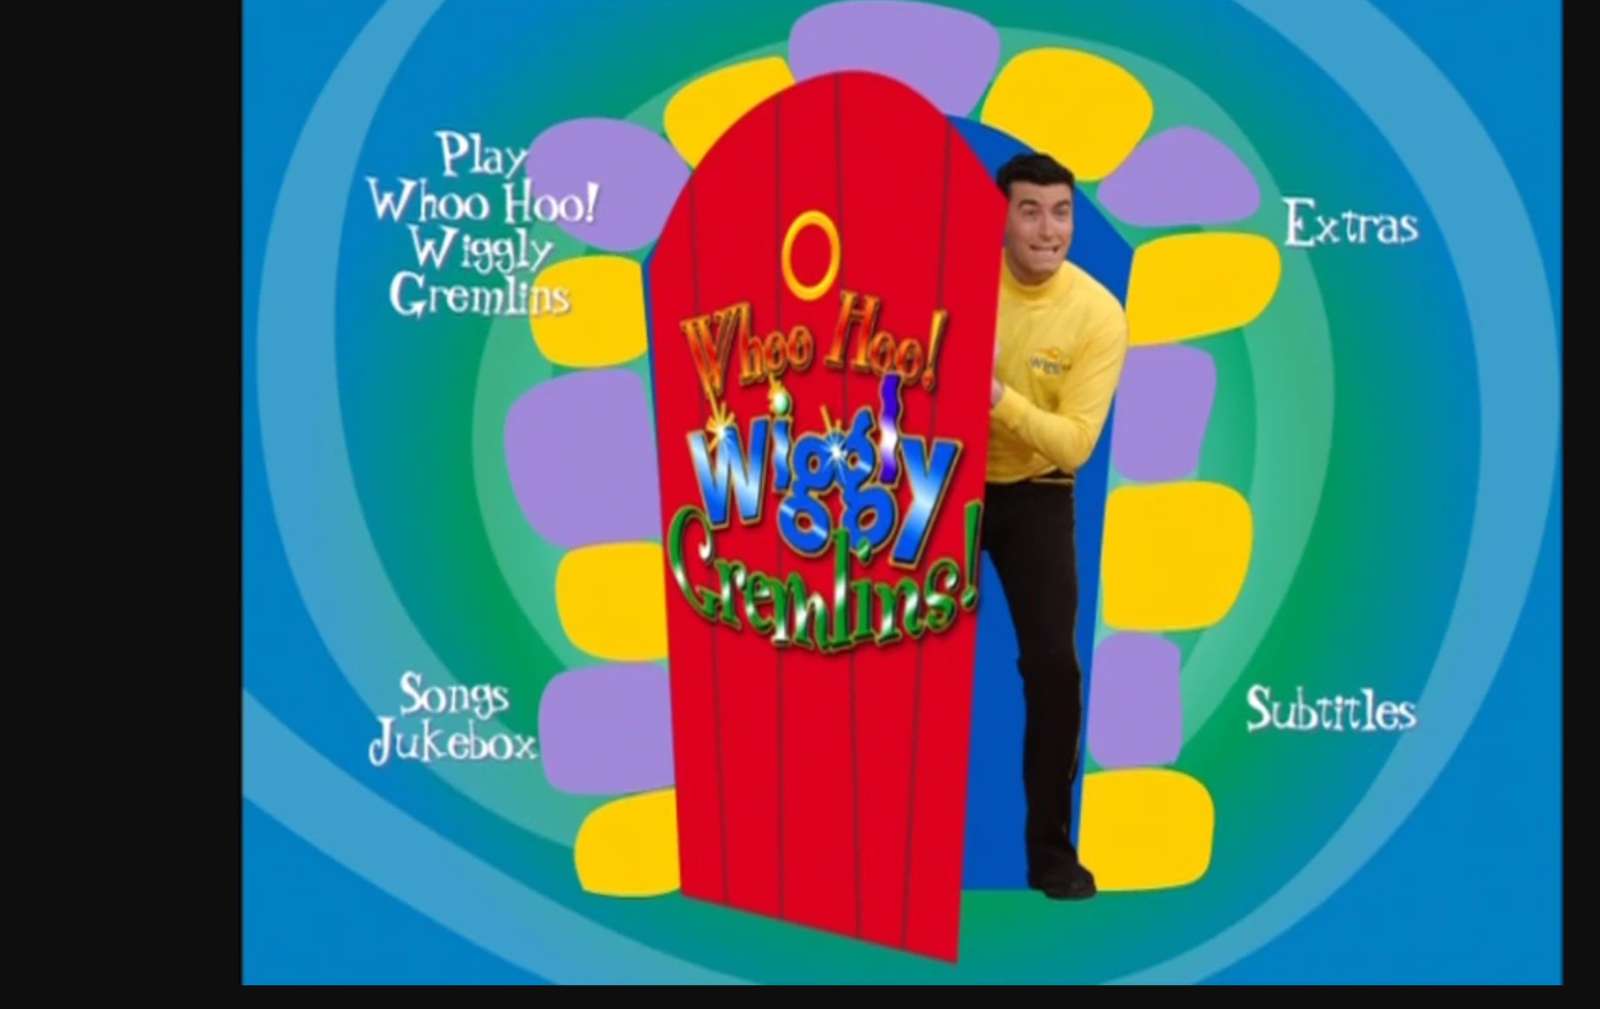 Menú de DVD de Whoo Whoo Wiggly Gremlins con rompecabezas en línea